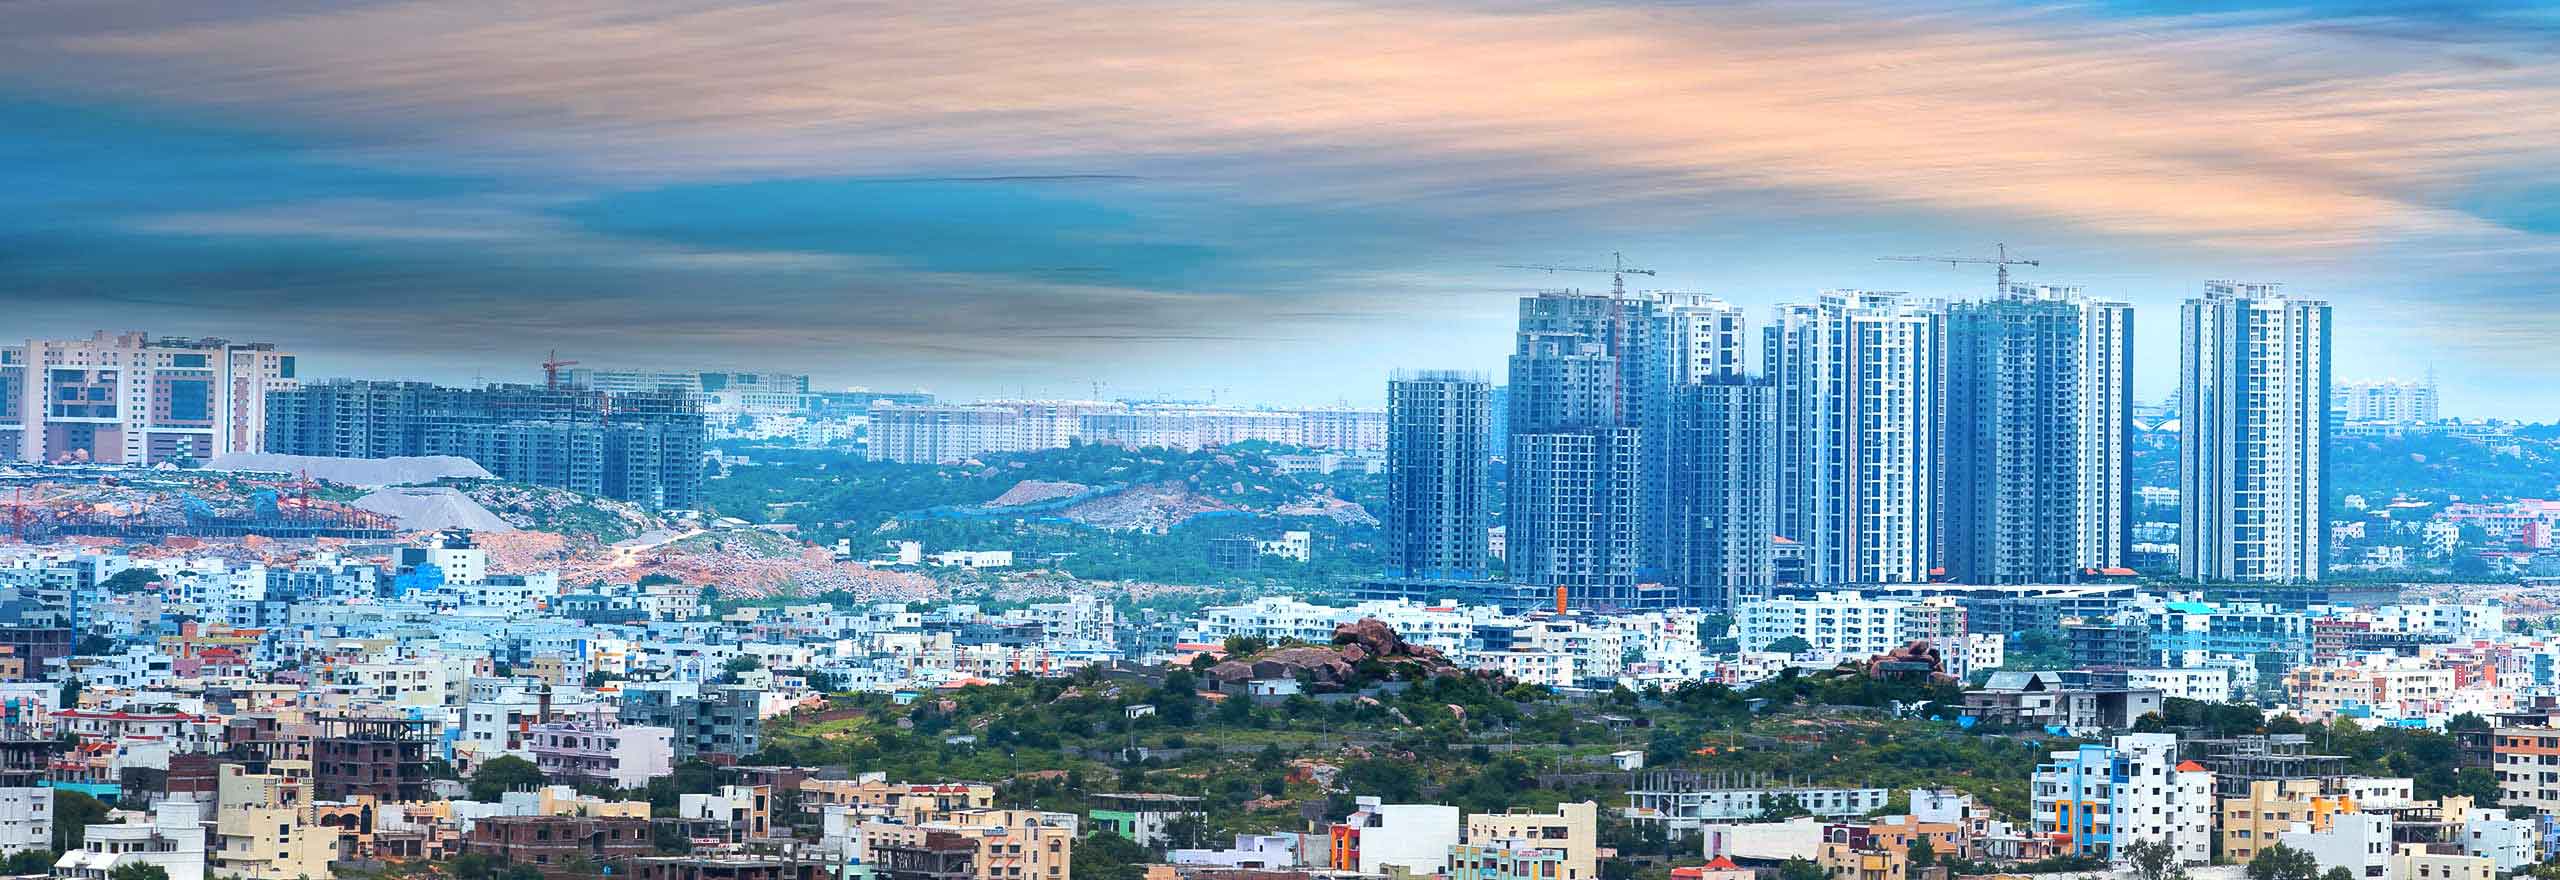 Das Capability Center India von Hexagon im Vergleich zum Stadtbild zeigt die Größe und die Chancen, die es bietet.